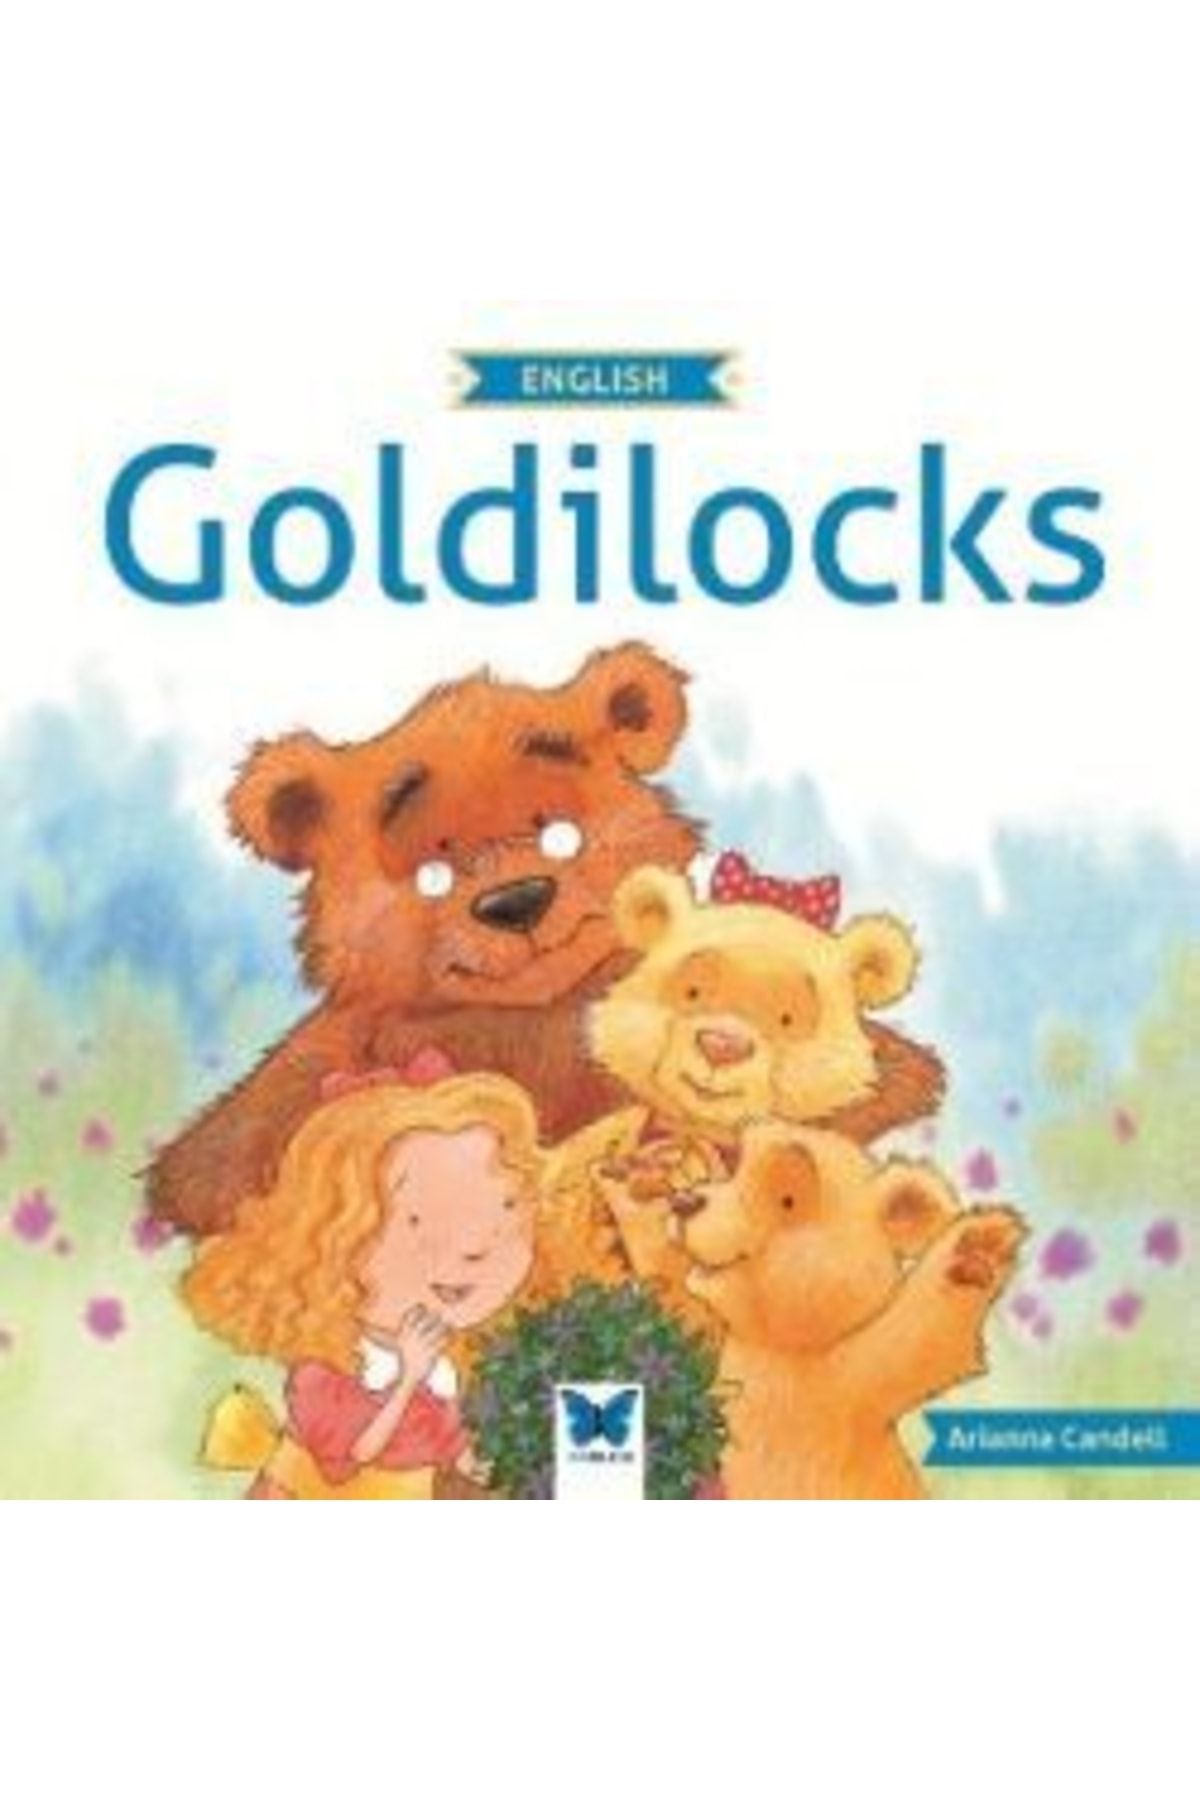 Mavi Kelebek Yayınları Goldilocks kitabı - Arianna Candell - Mavi Kelebek Yayınları